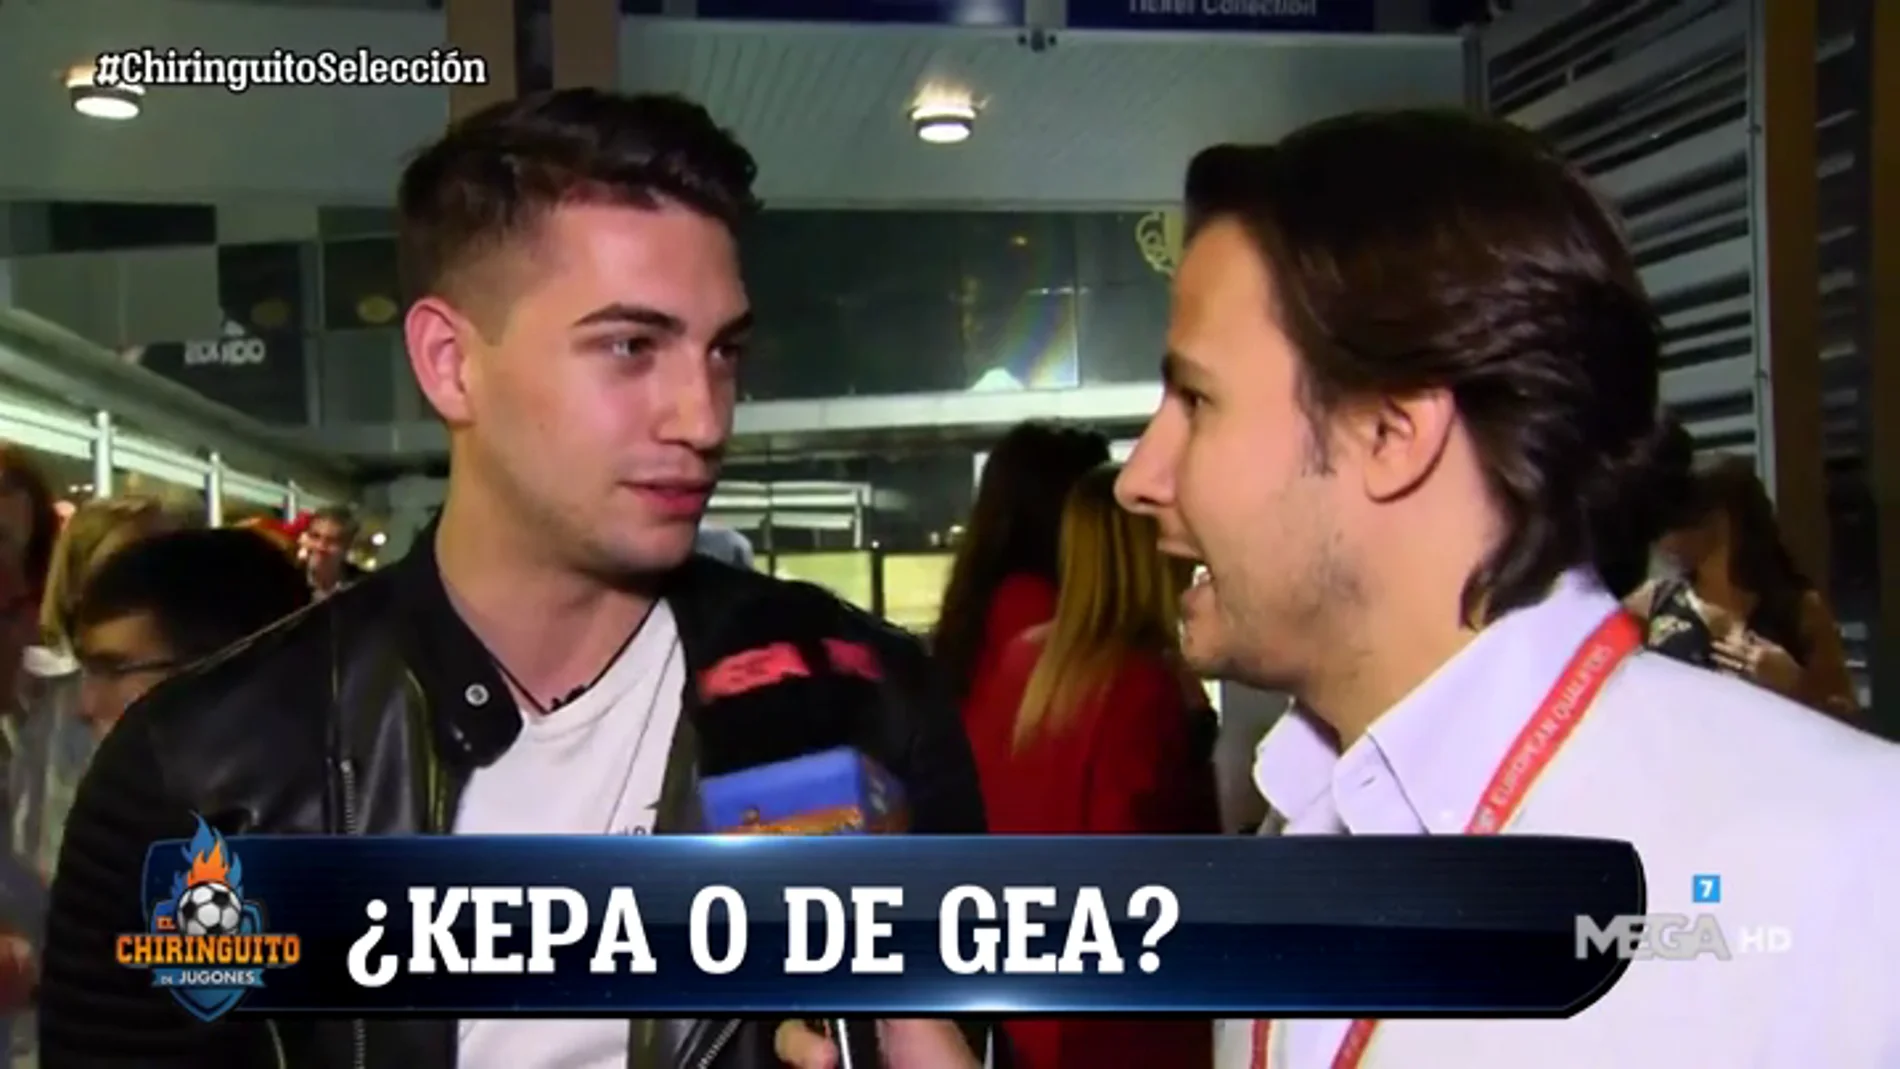 La afición española respalda la titularidad de Kepa